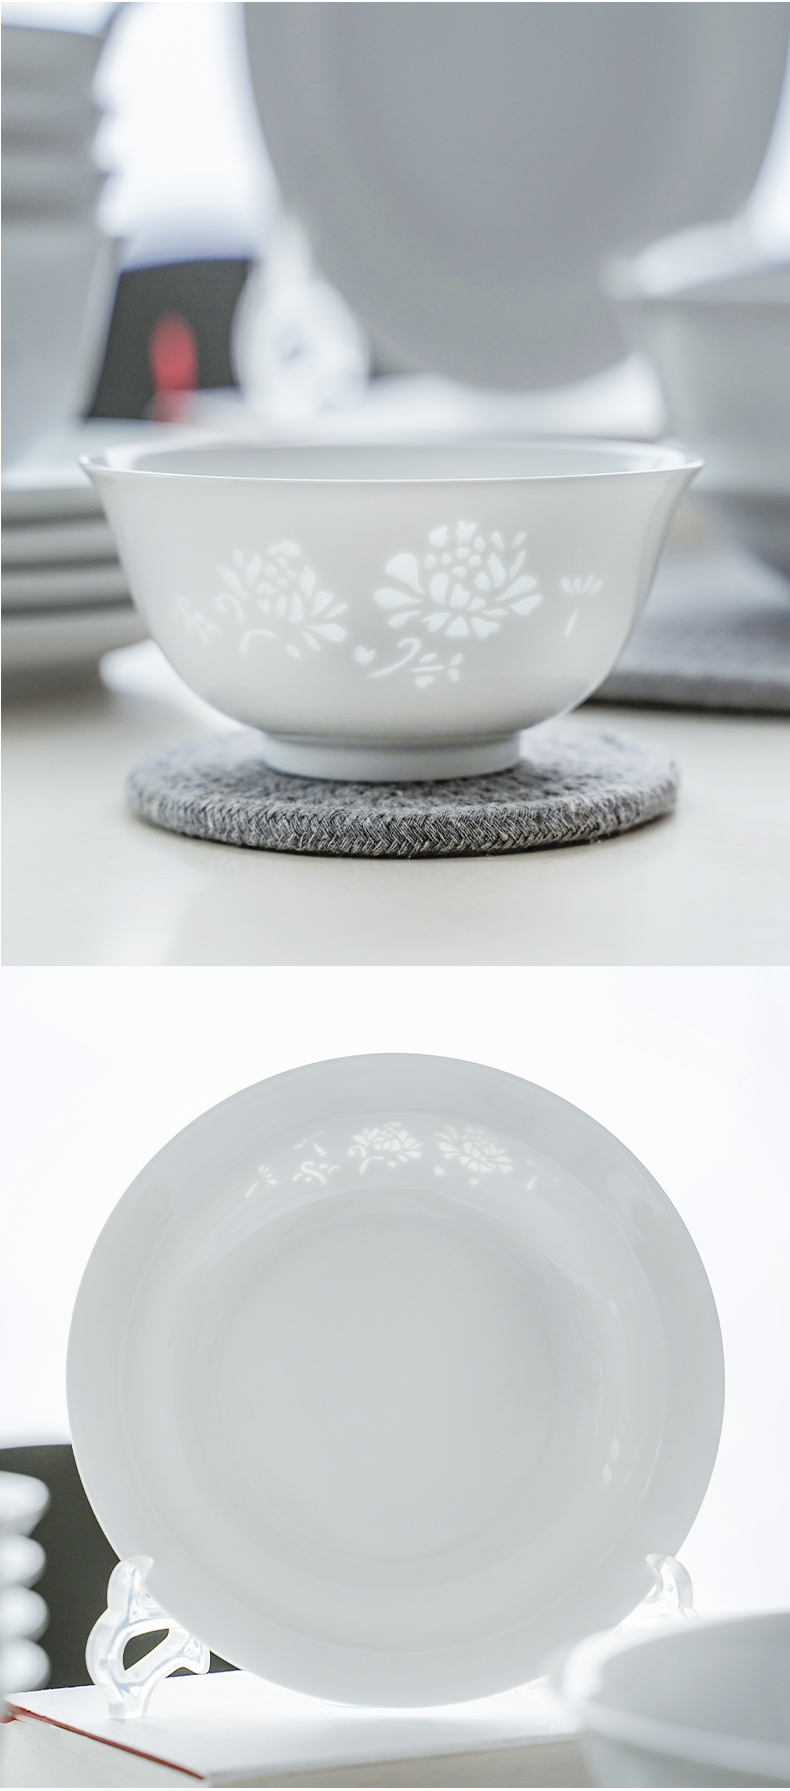 古鎮陶瓷 景德鎮玲瓏白瓷陶瓷餐具白色碗盤碟勺碗碟套裝家用盤子